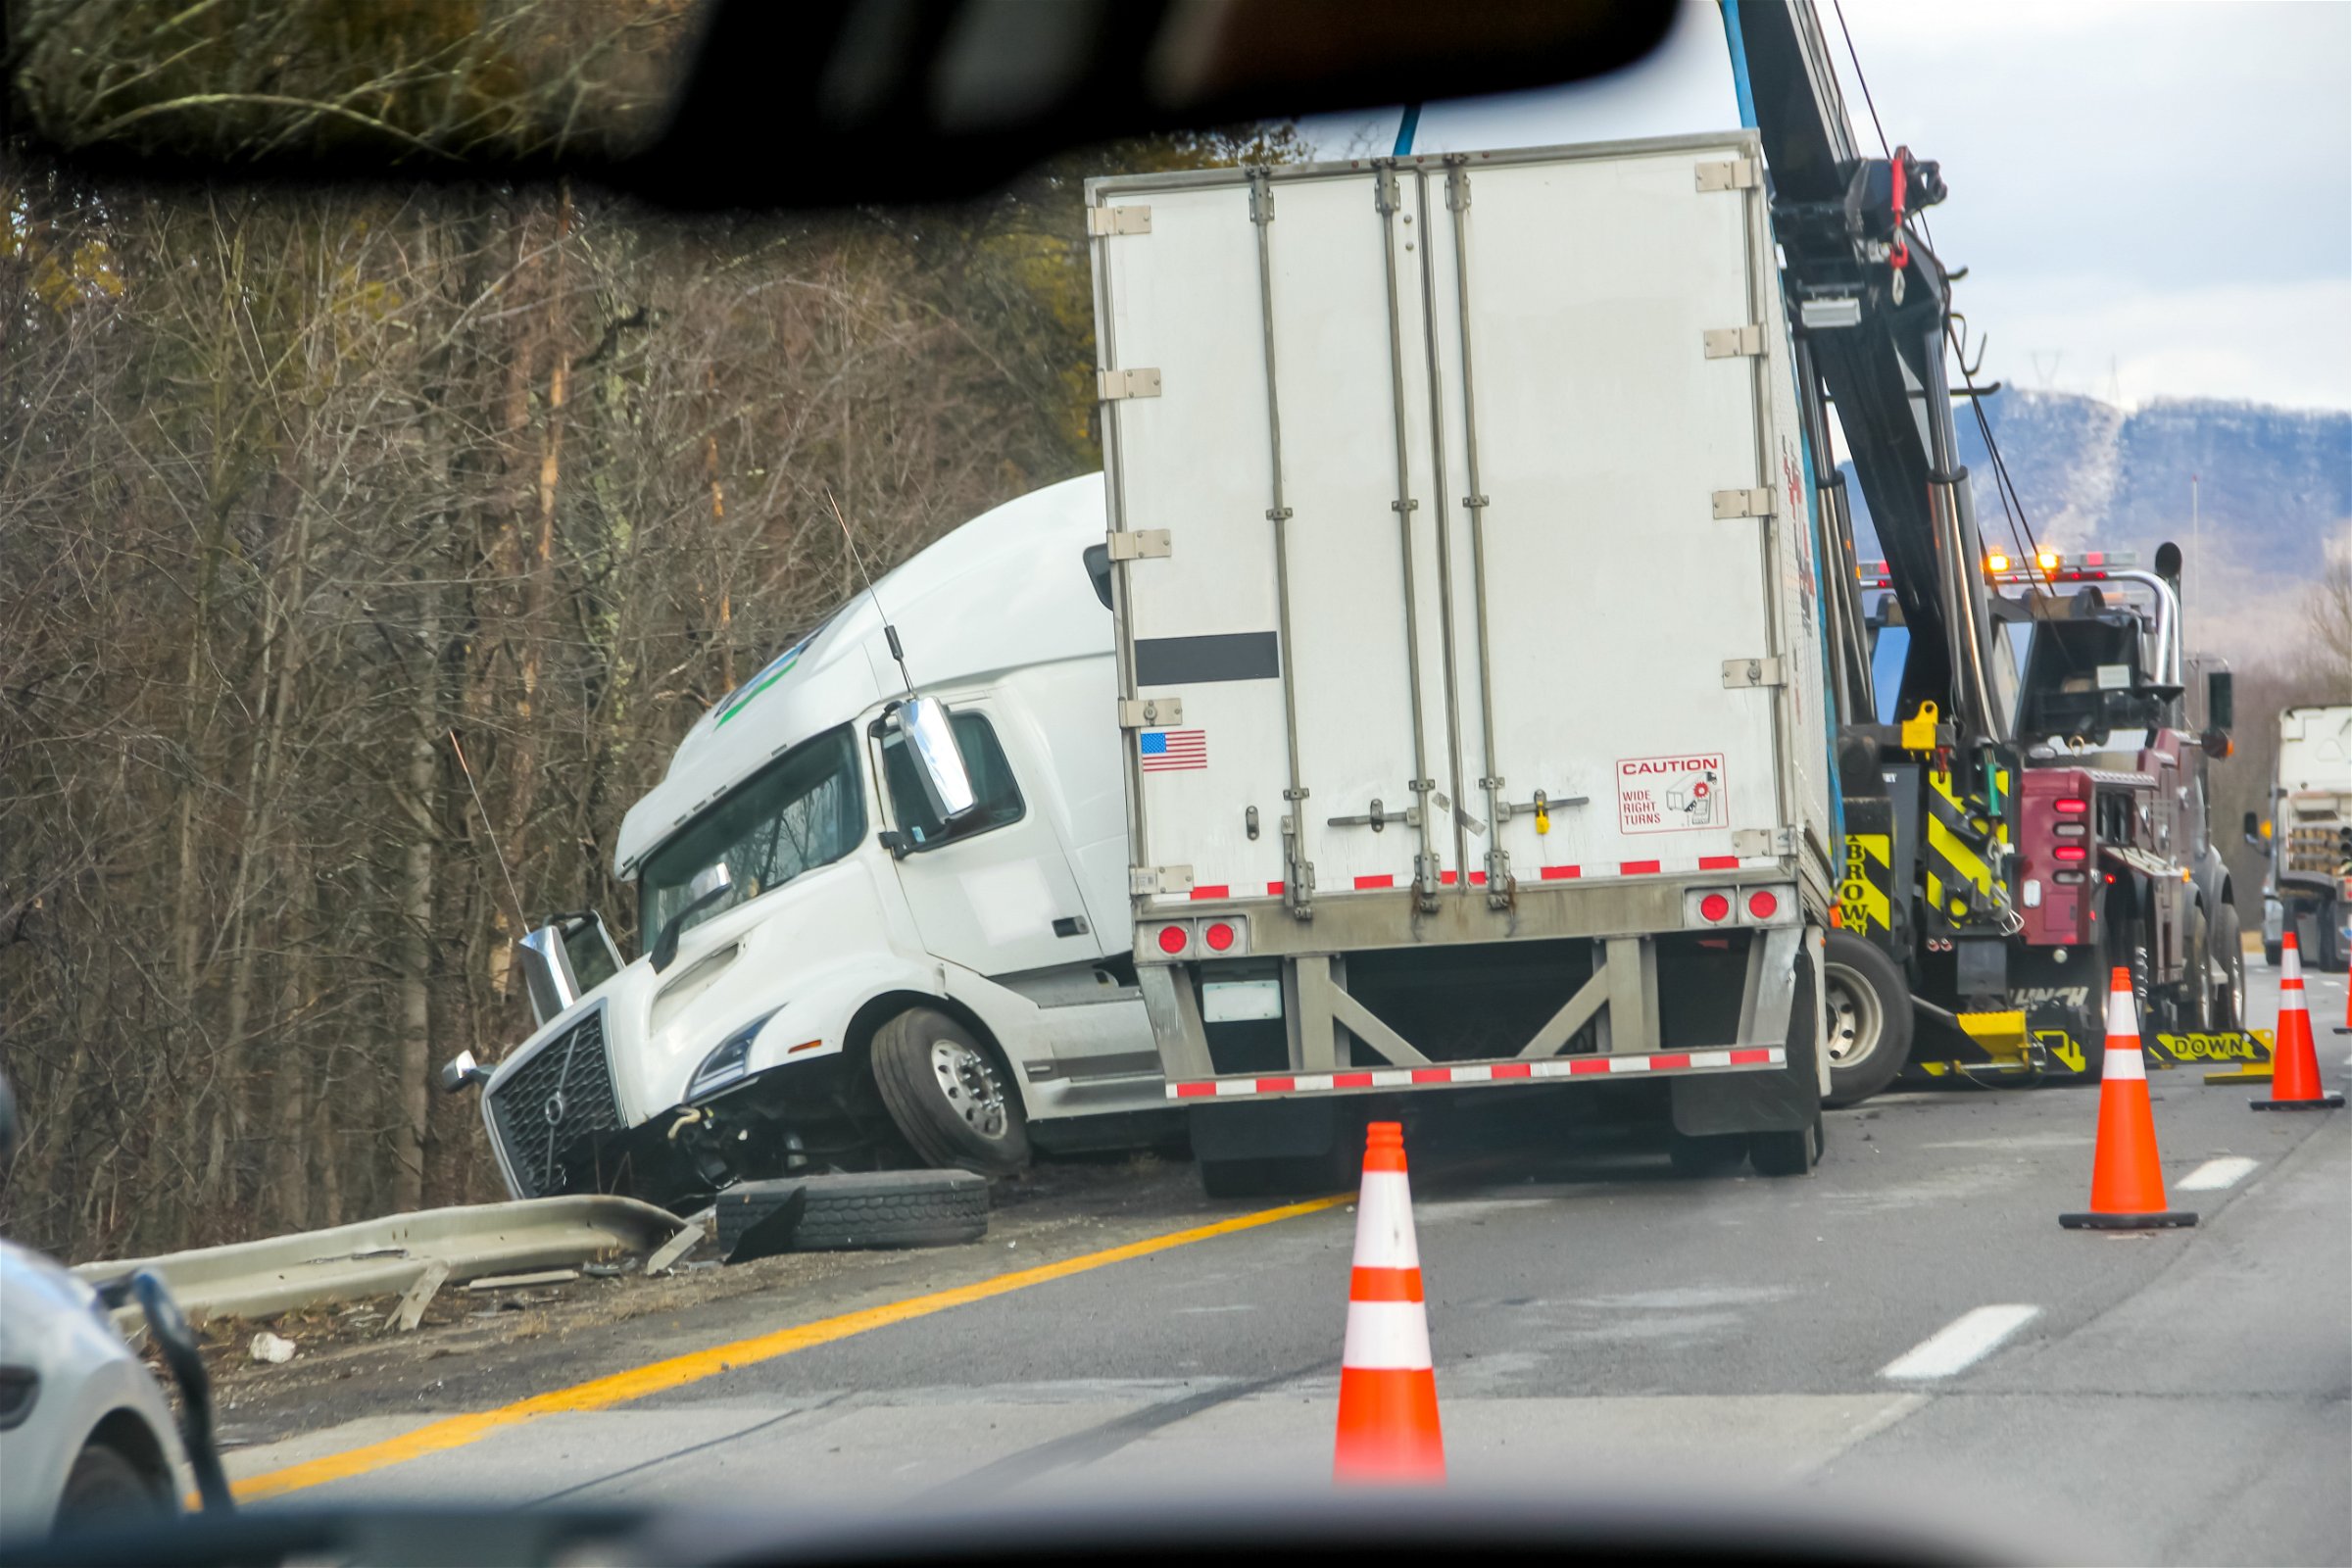 Статистика аварий с участием тяжелых грузовиков на дорогах штата Пенсильвания показывает, что в последние годы наблюдаются тревожные тенденции.